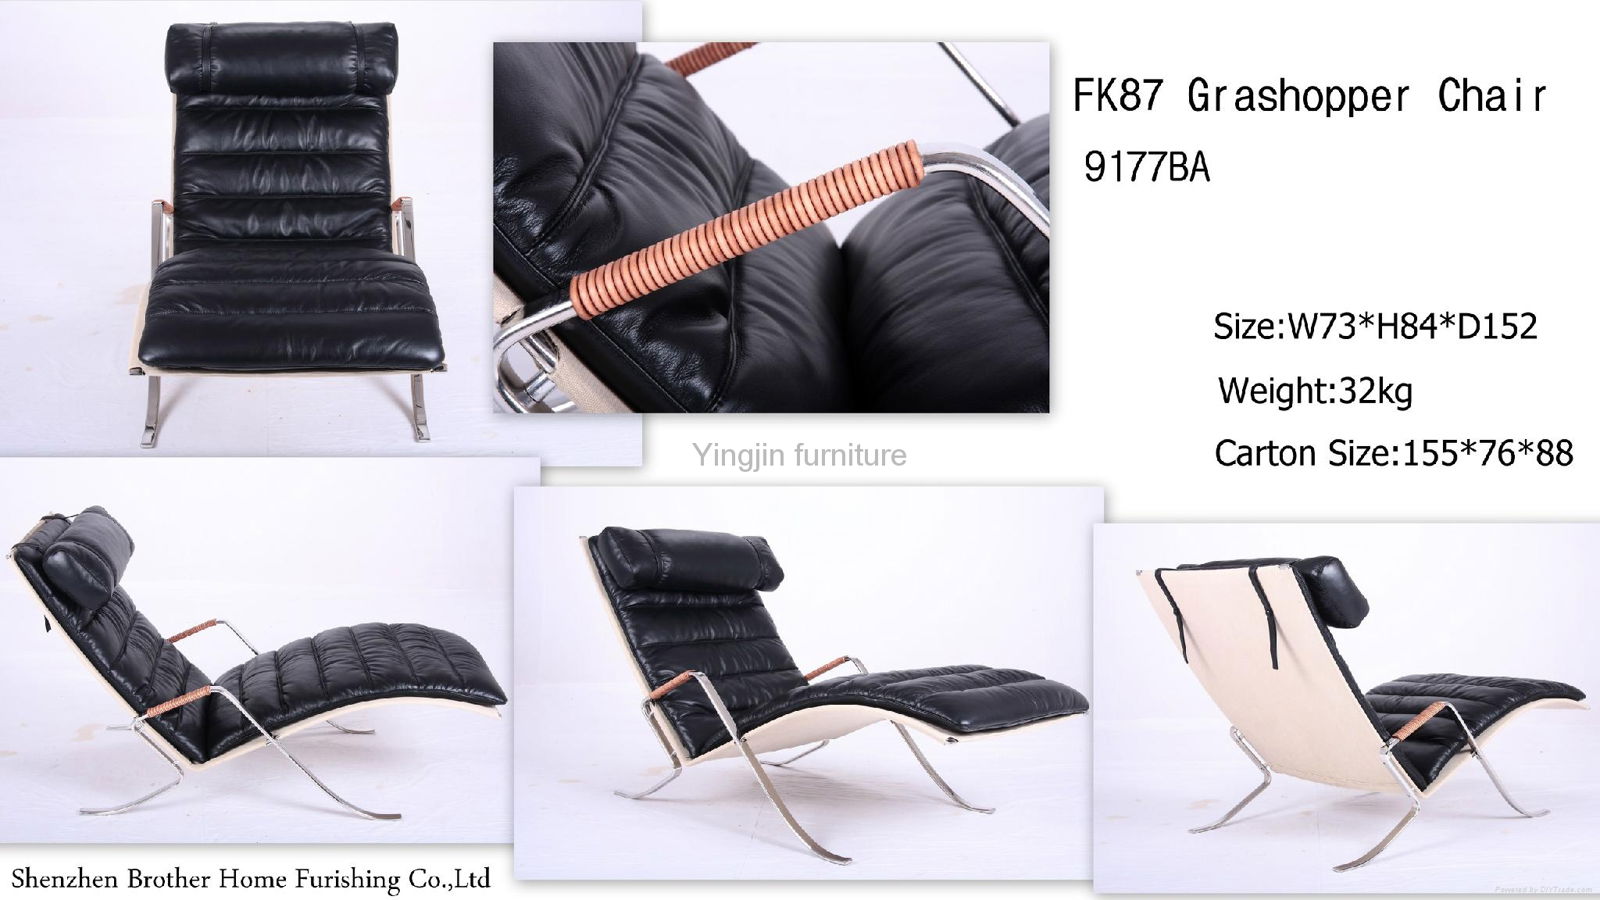  FK87 Grasshopper chair chaise lounge 